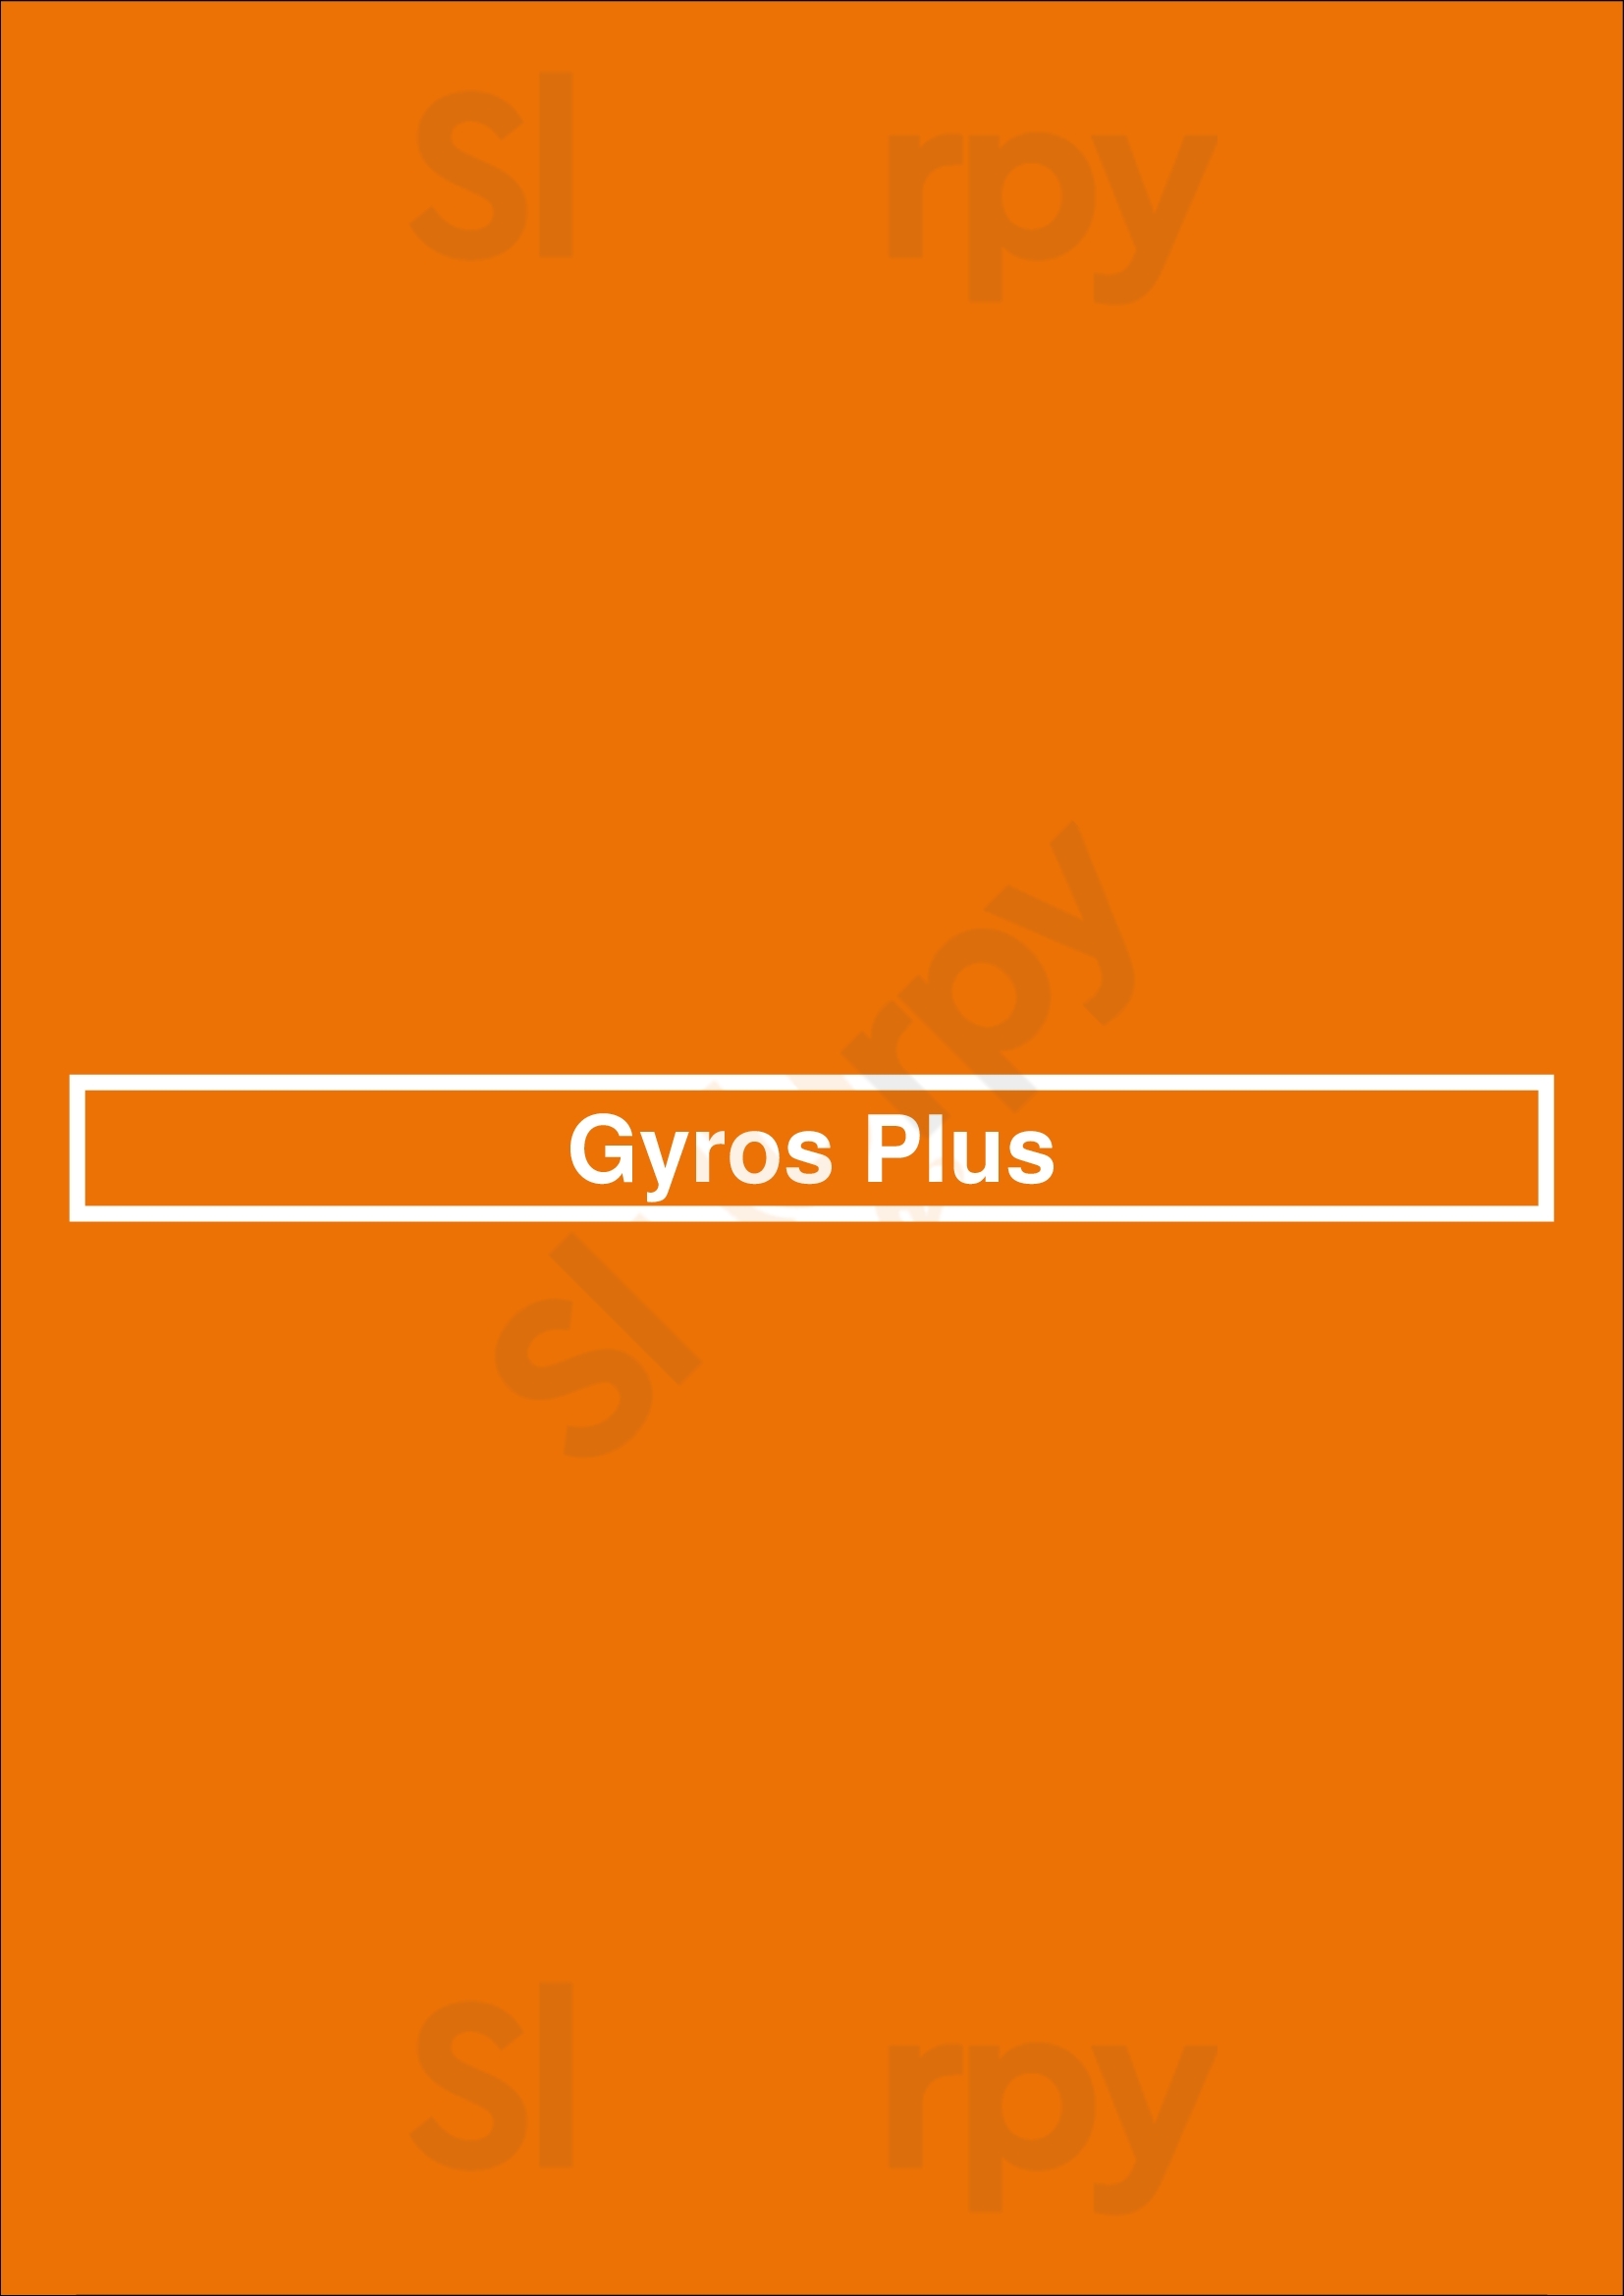 Gyros Plus Everett Menu - 1